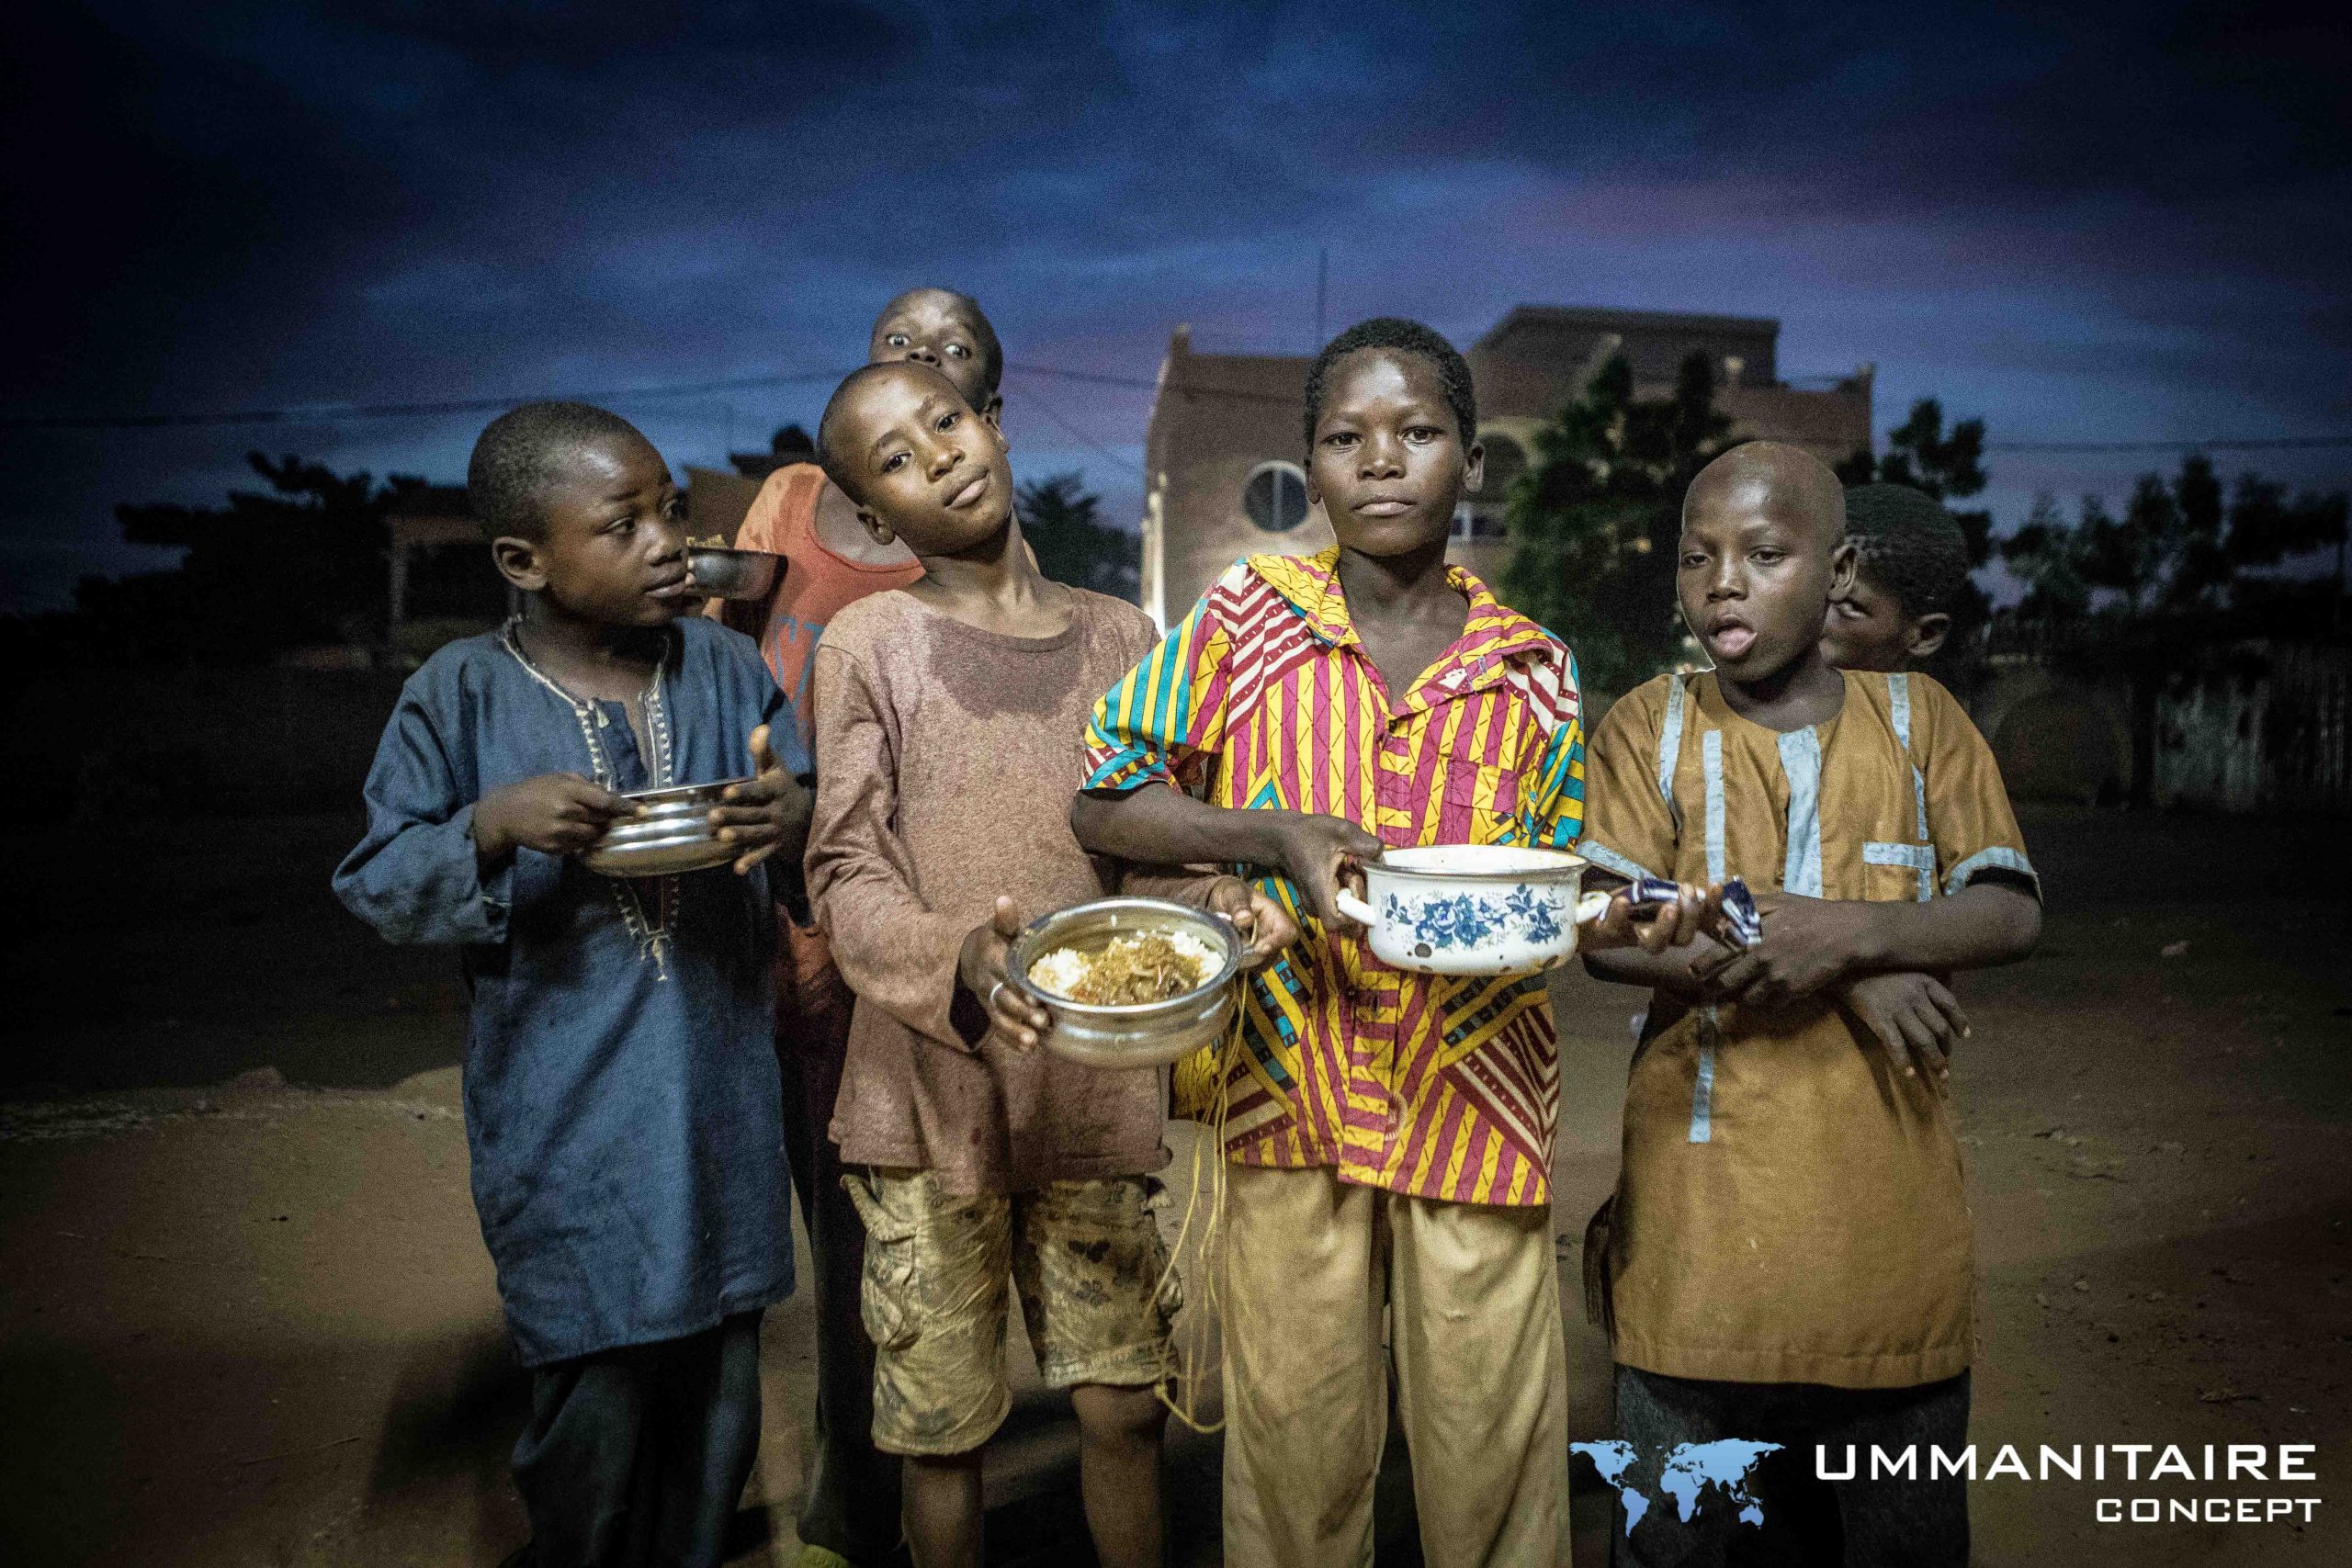 enfants des rues reçoivent des repas distribués par la cantine des rues de l'association ummanitaire concept